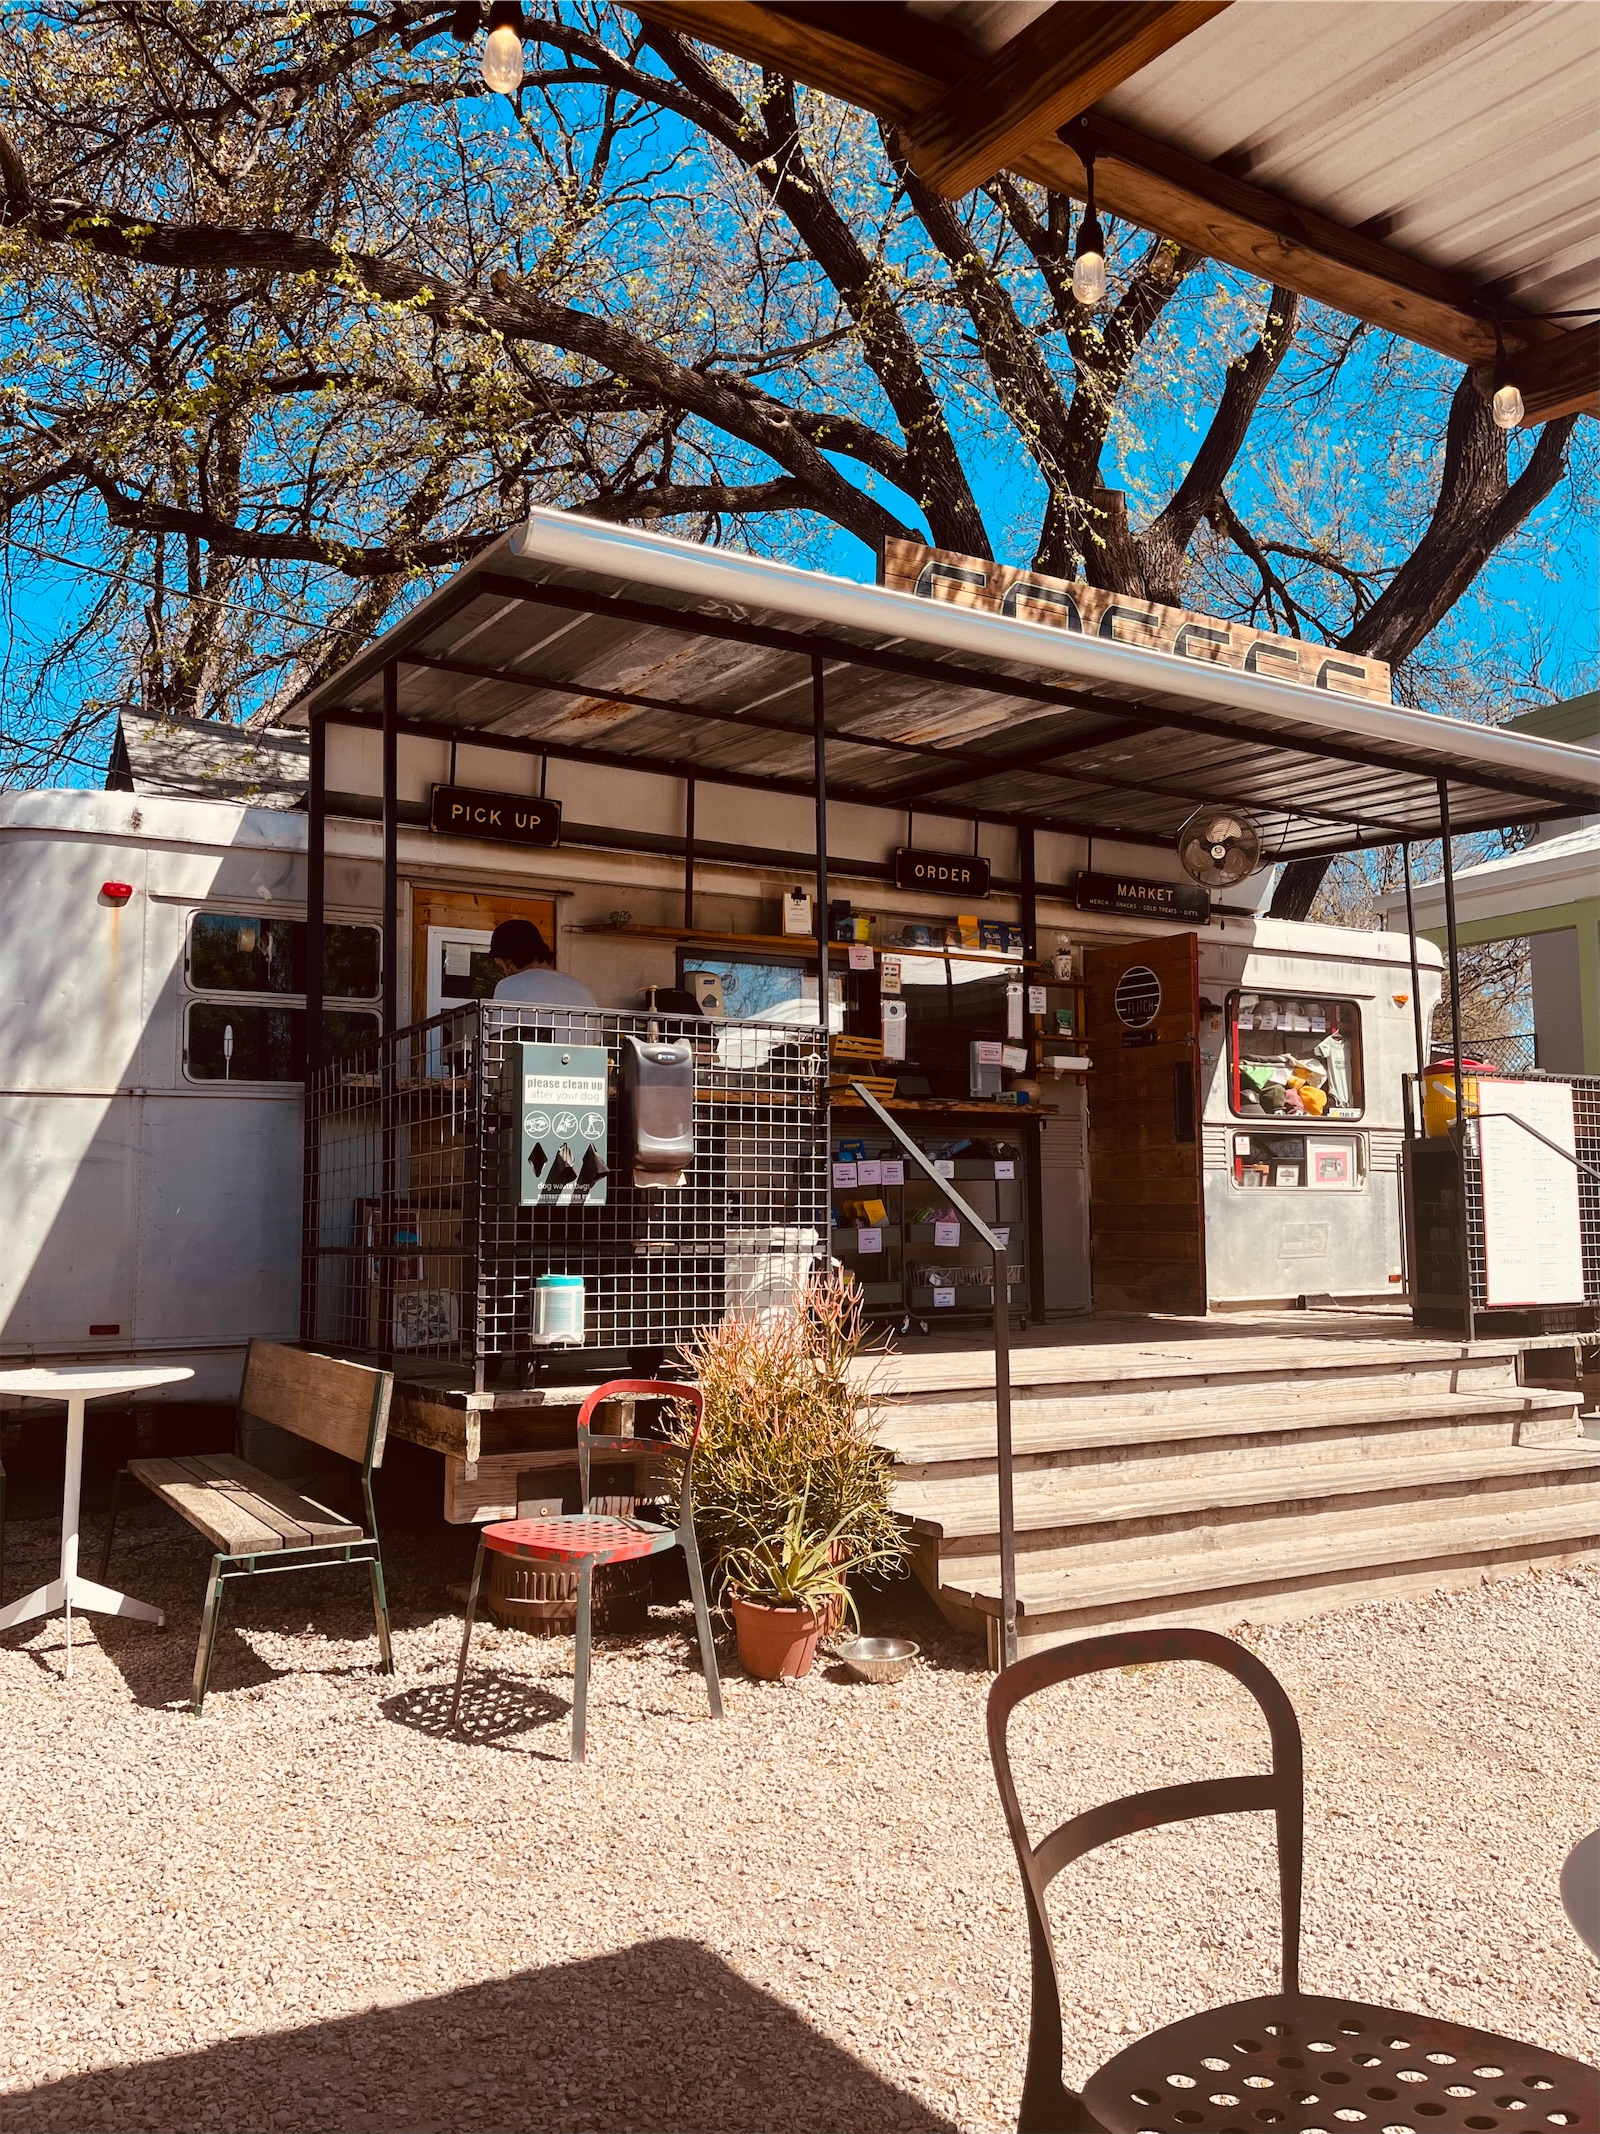 A hip, outdoor coffee shop